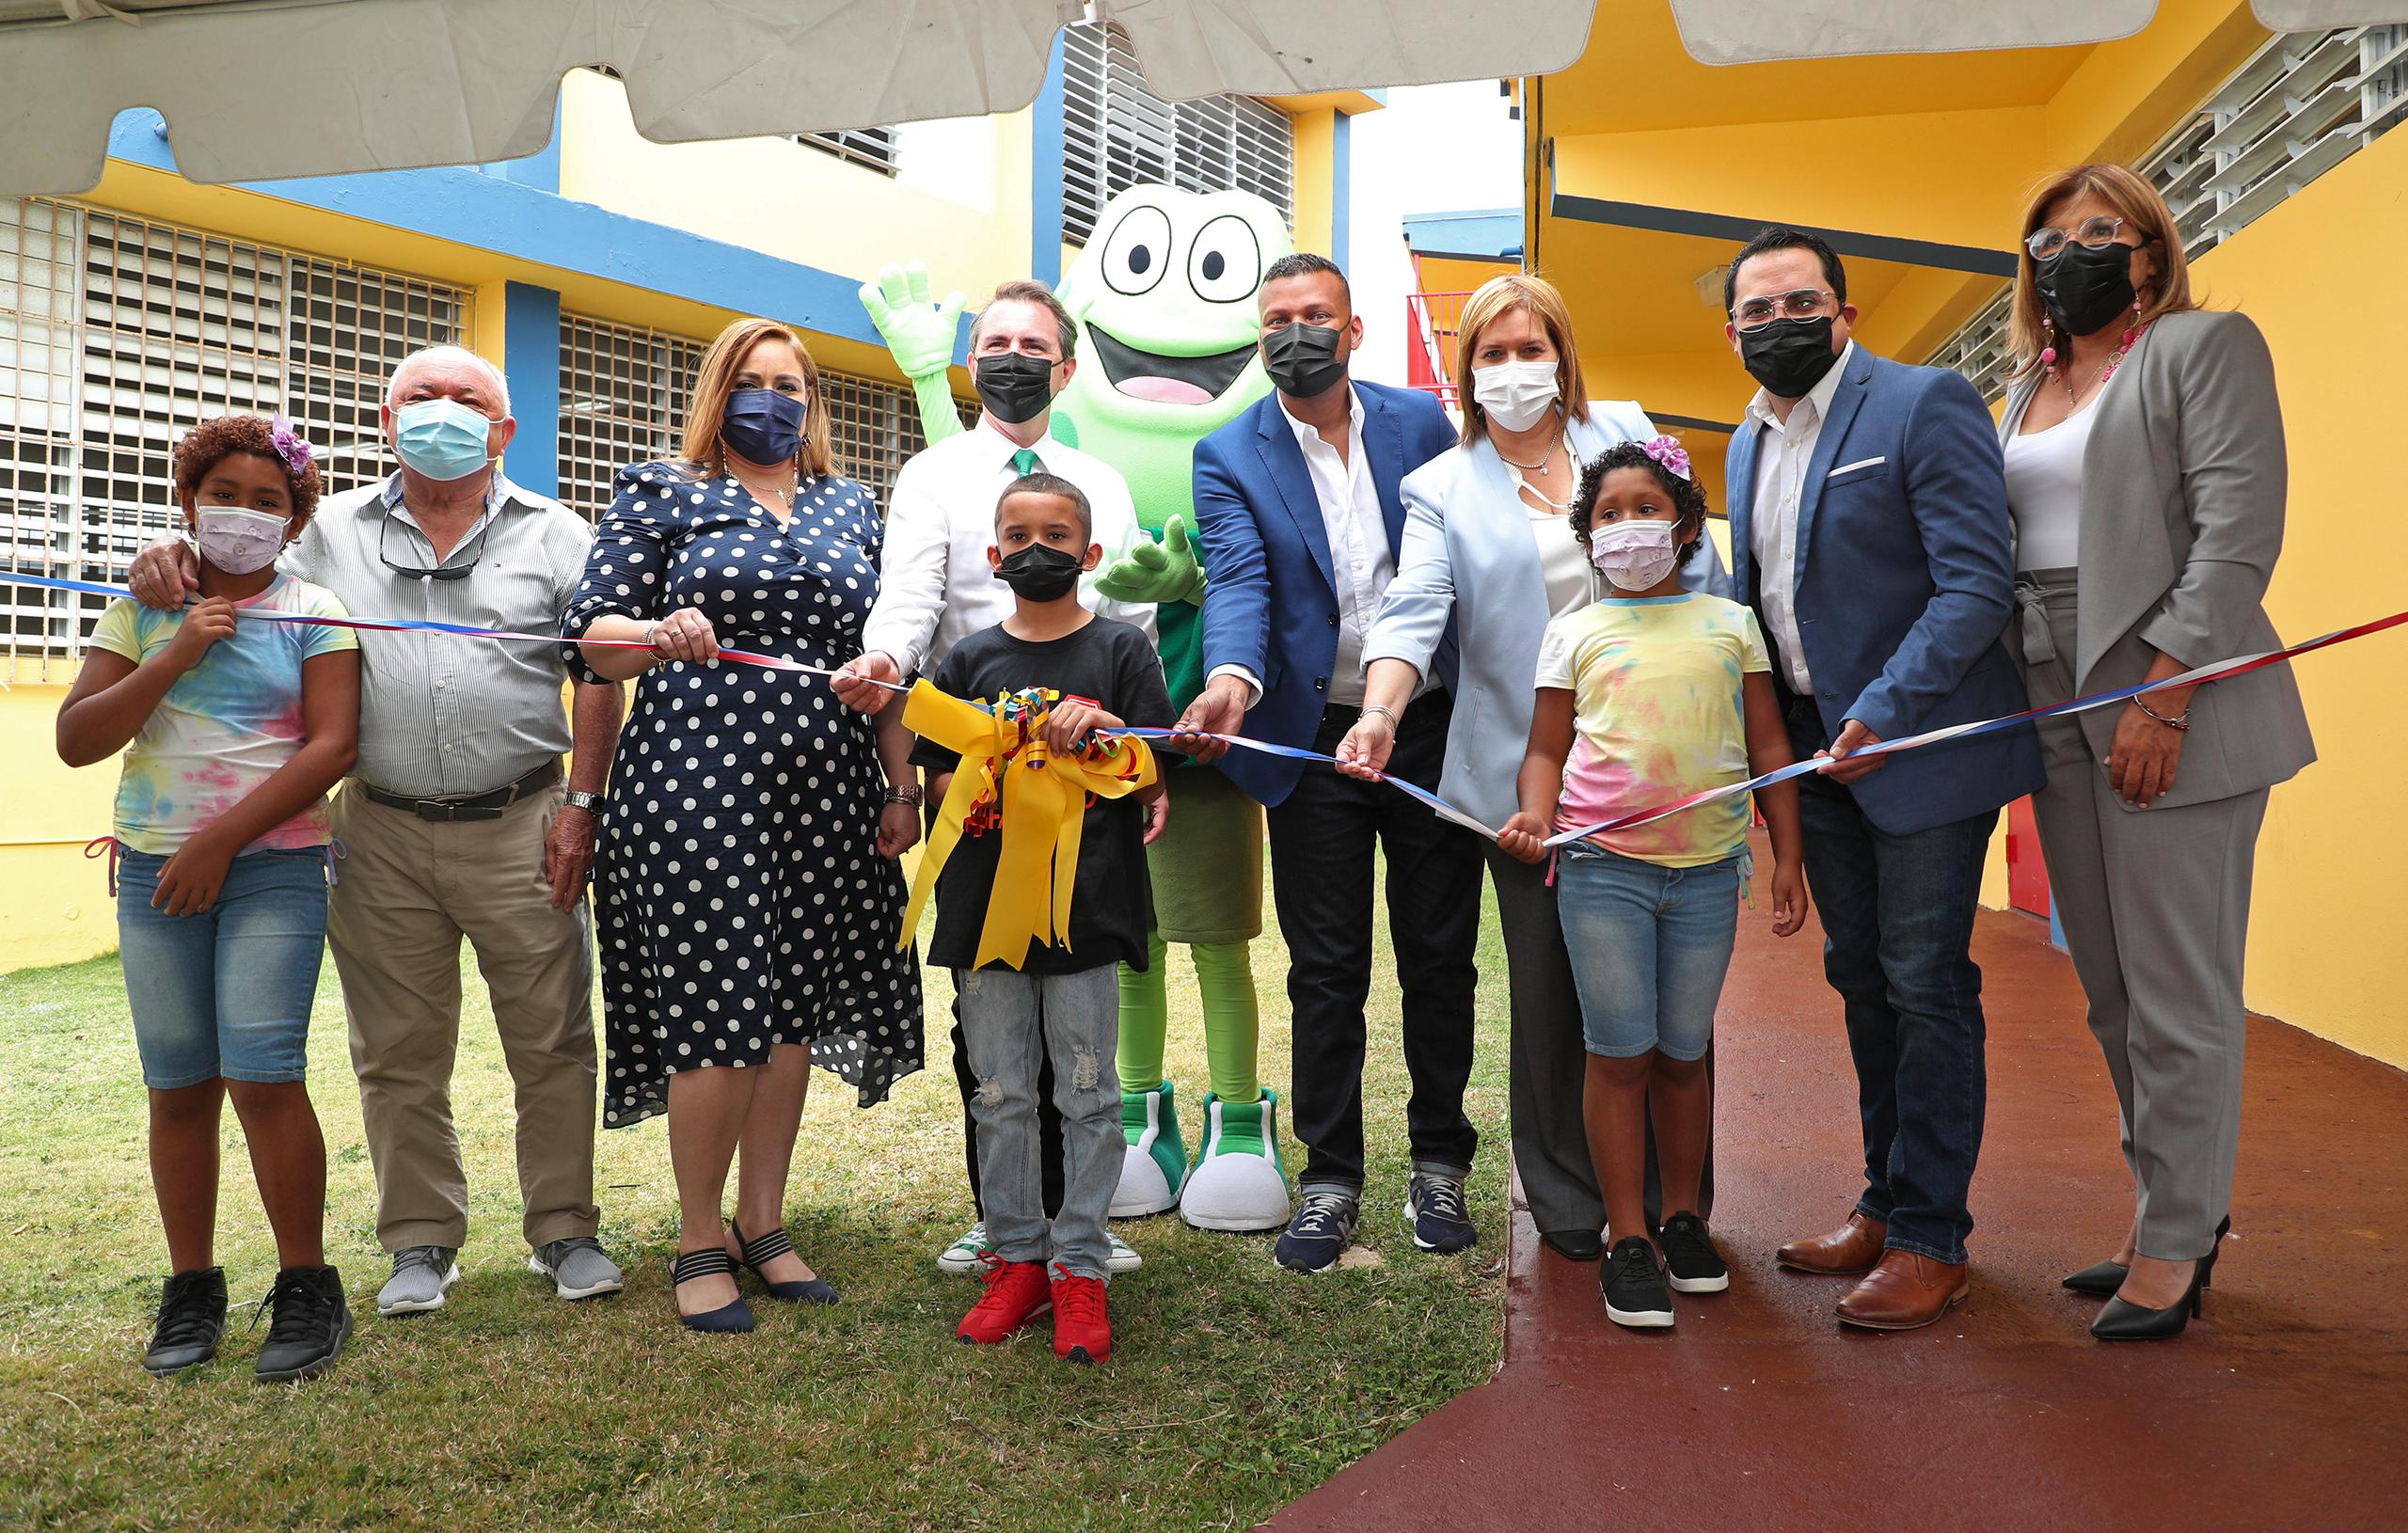 El centro, inaugurado esta semana, tiene cinco espacios de juegos terapéuticos para la niñez, algunos con personajes de grupo infantil Atención Atención.